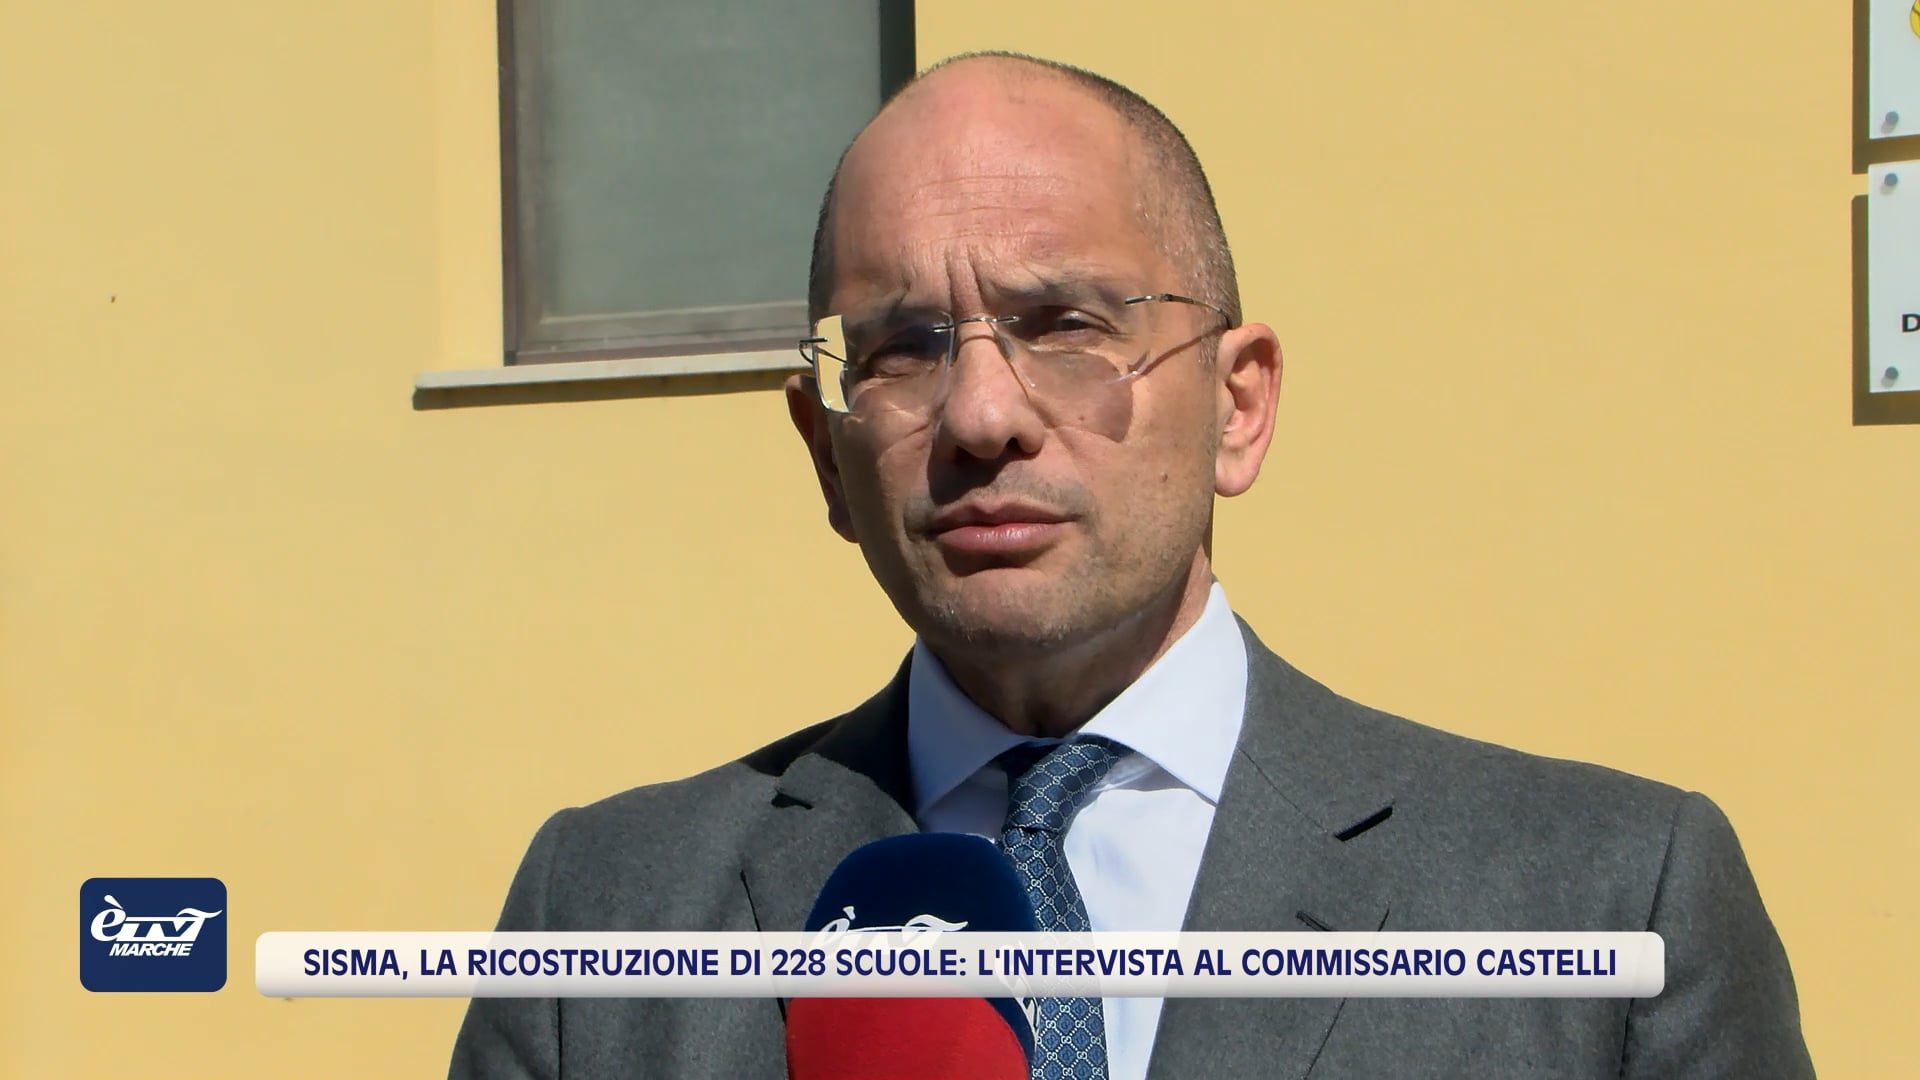 Sisma, la ricostruzione di 228 scuole: l'intervista al Commissario Castelli -VIDEO